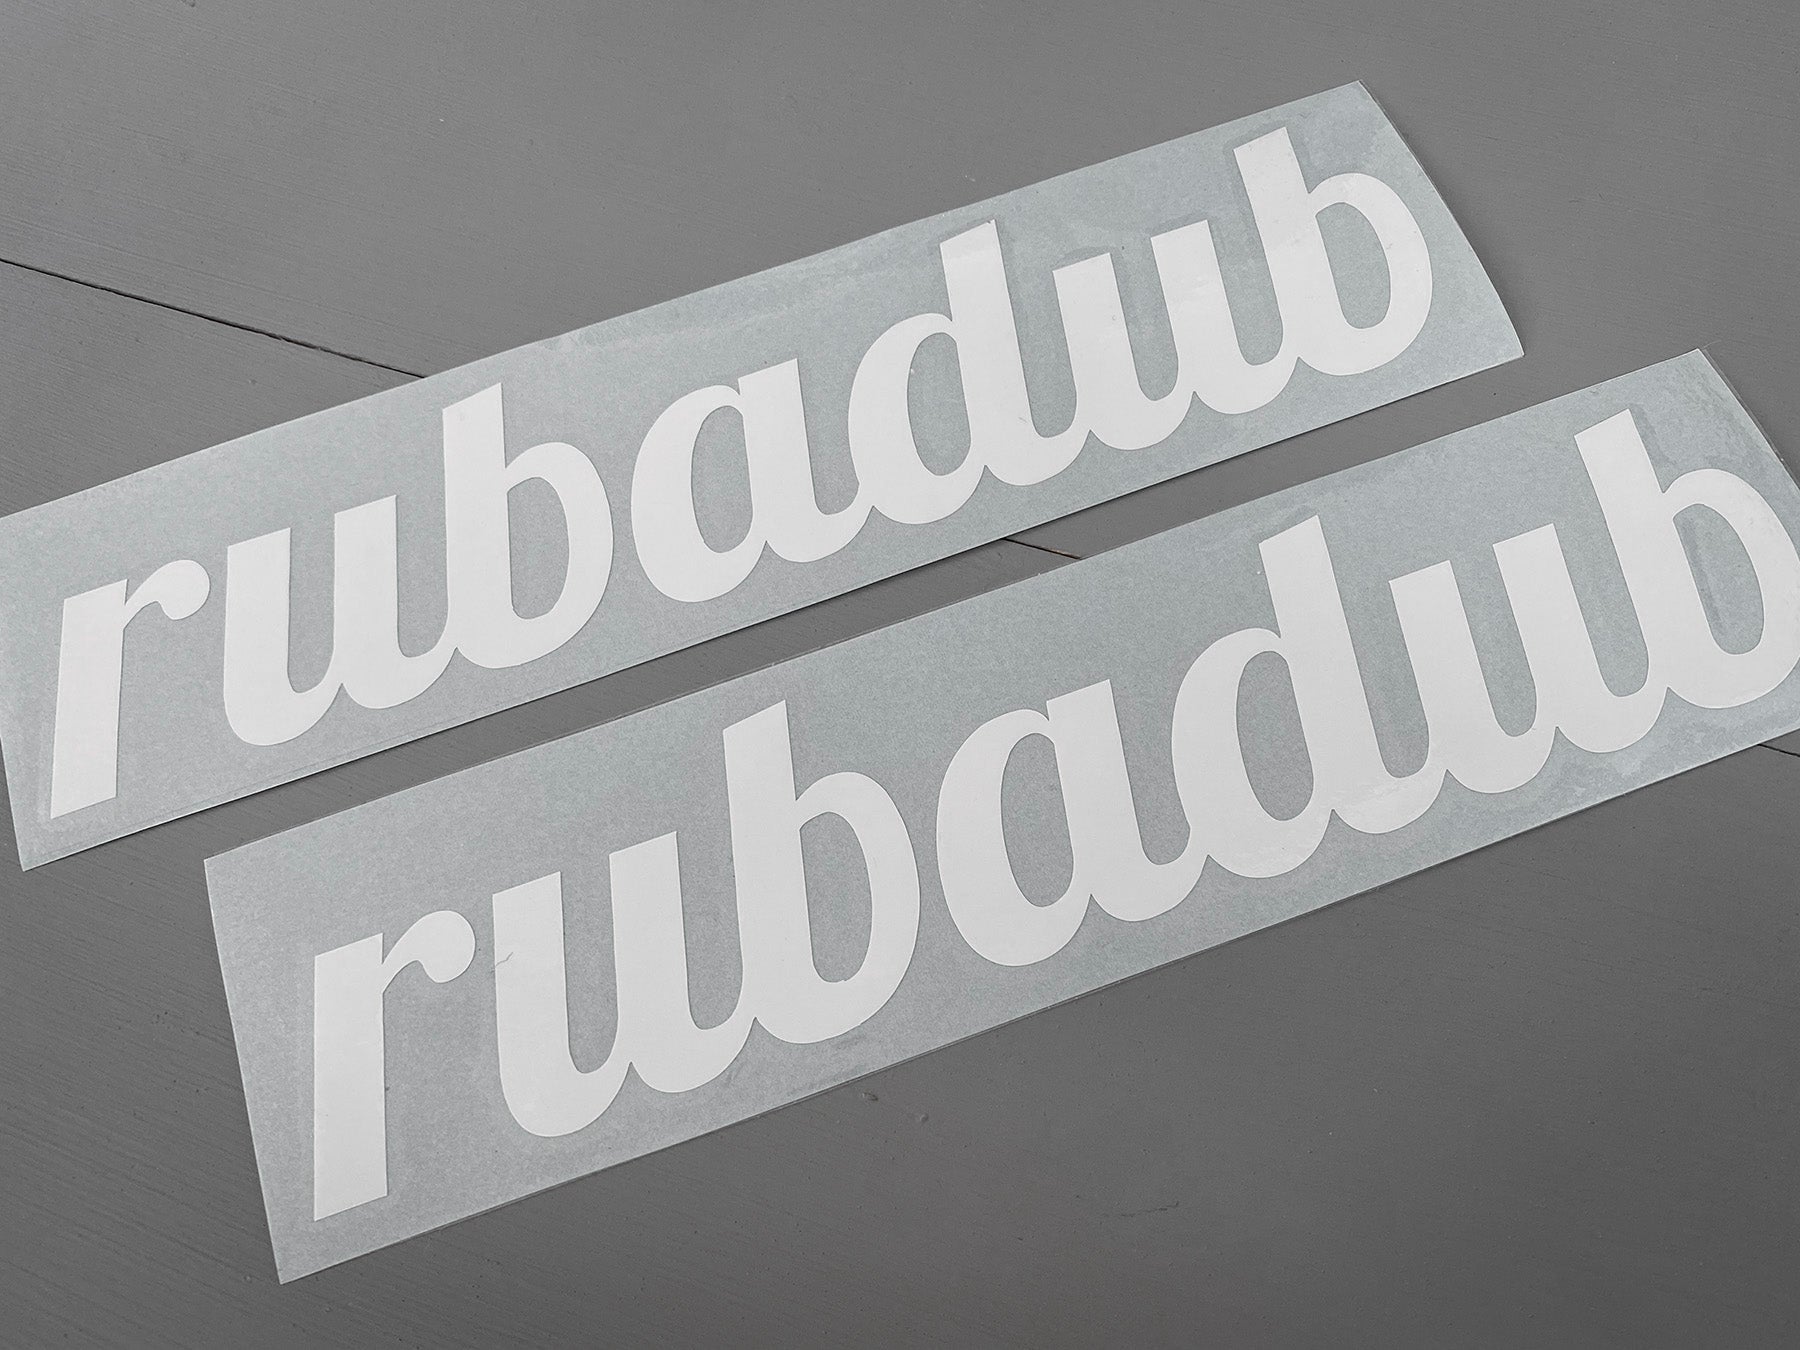 rubadub Script Logo Decal